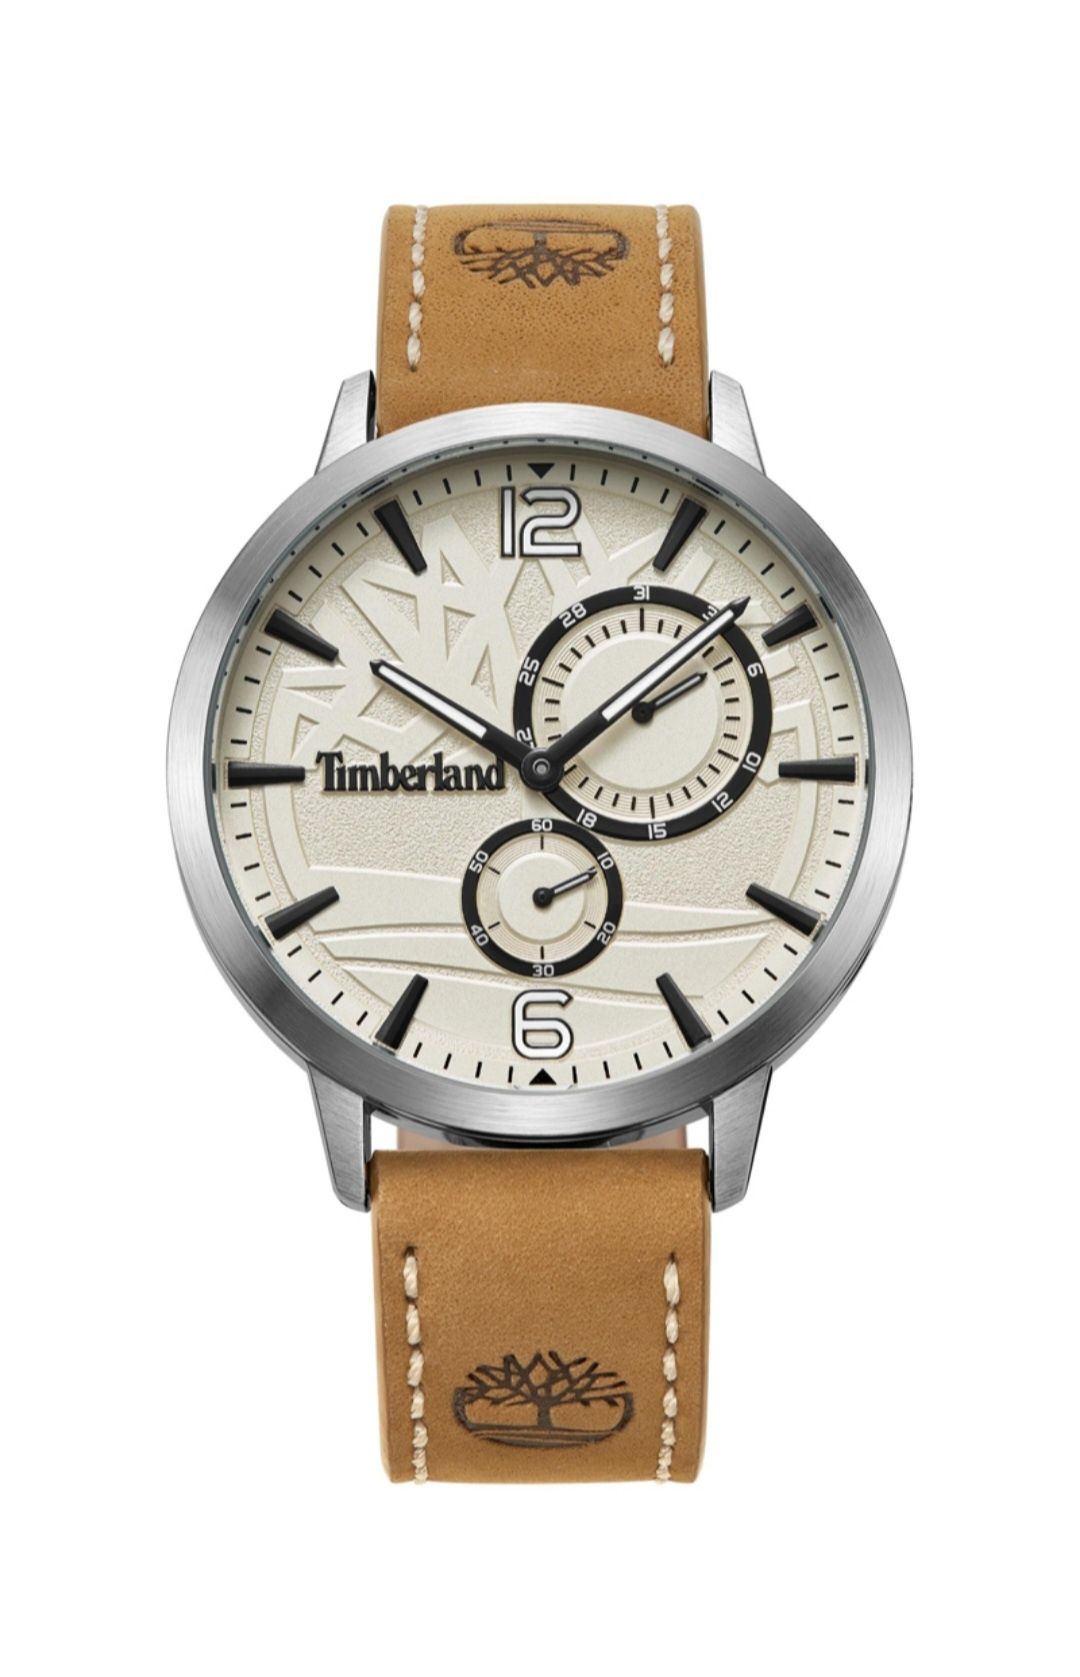 Vendo relógio Timberland